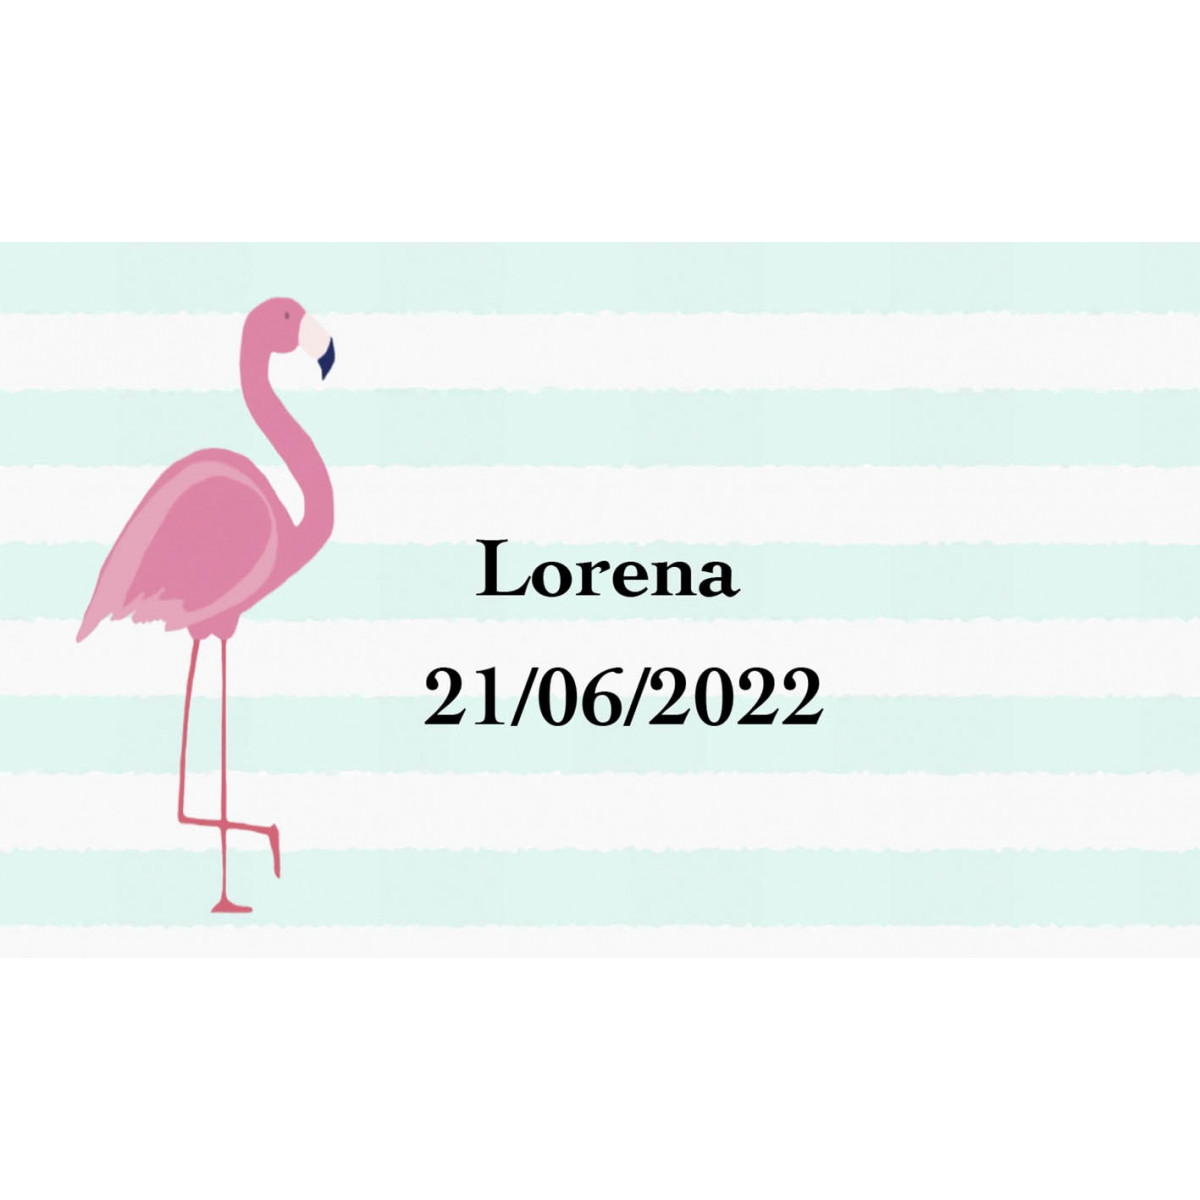 Adesivo flamenco personalizzato con nome e data